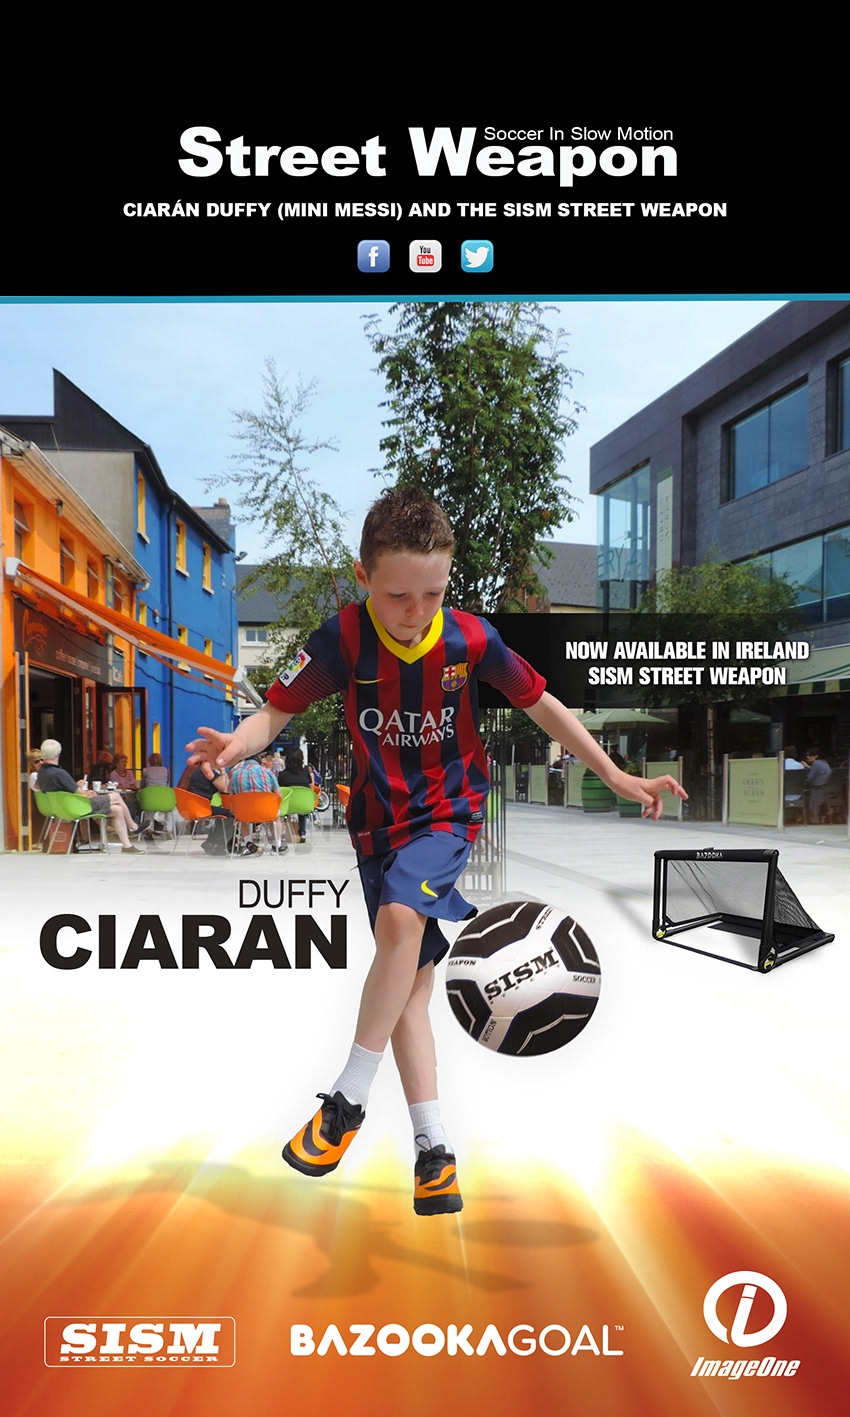 dublin ireland  Street Soccer Soccer Freestyler street performer Ciaran Duffy Mini Messi  SISM soccer Image One